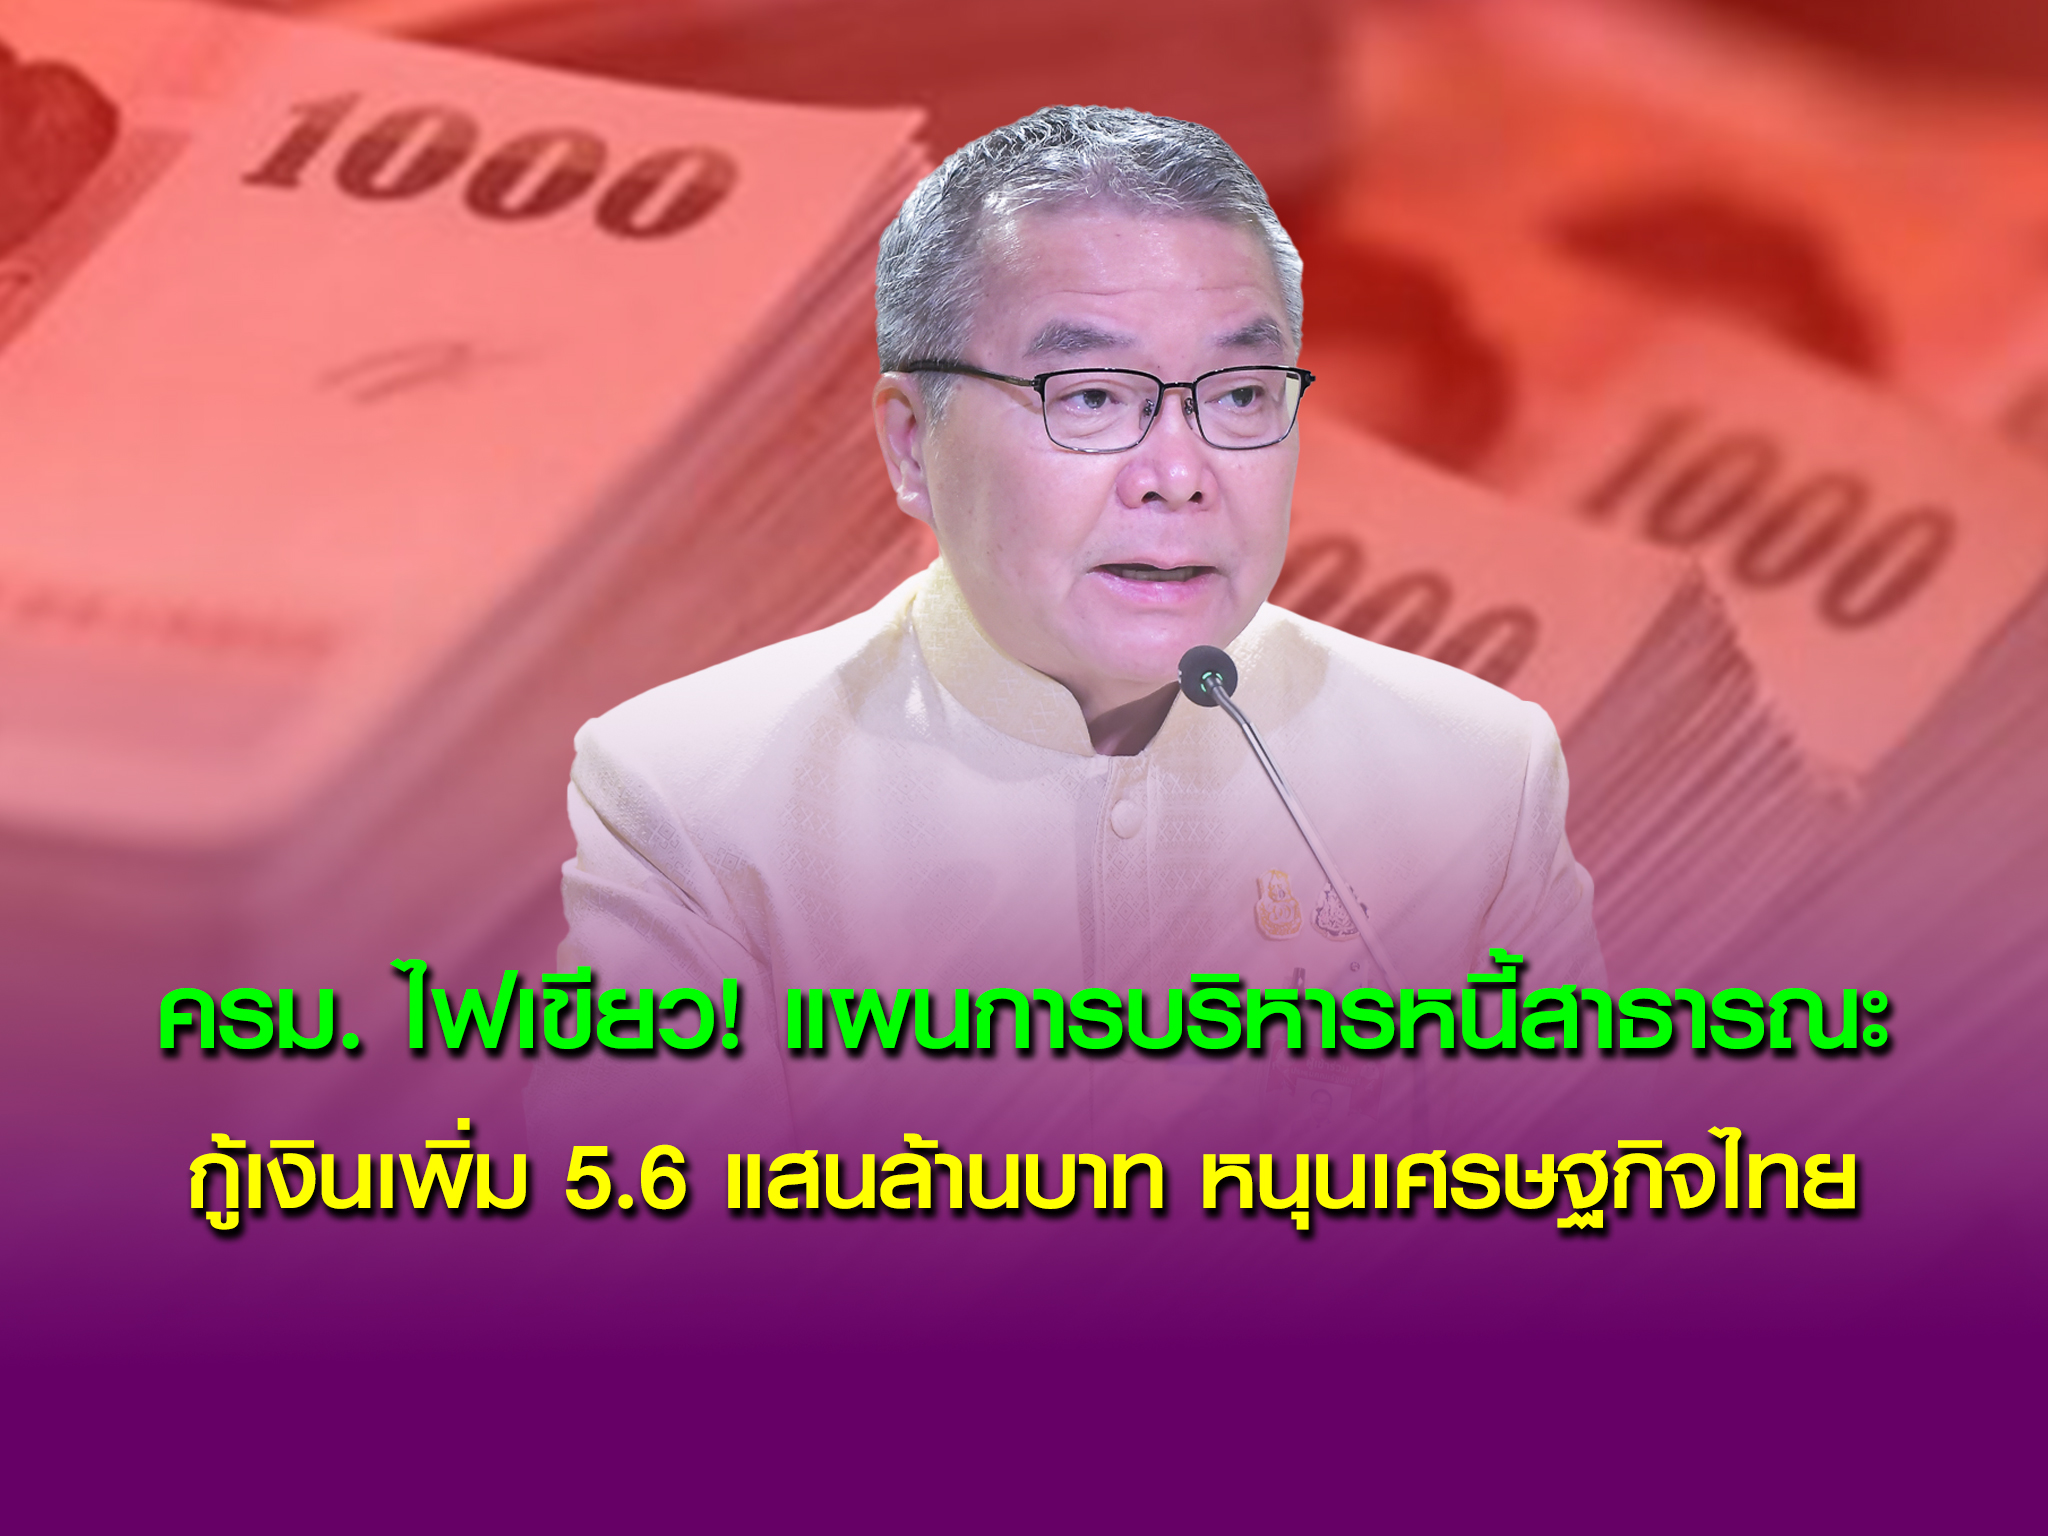  ครม. ไฟเขียว! แผนการบริหารหนี้สาธารณะ กู้เงินเพิ่ม 5.6 แสนล้านบาท หนุนเศรษฐกิจไทย